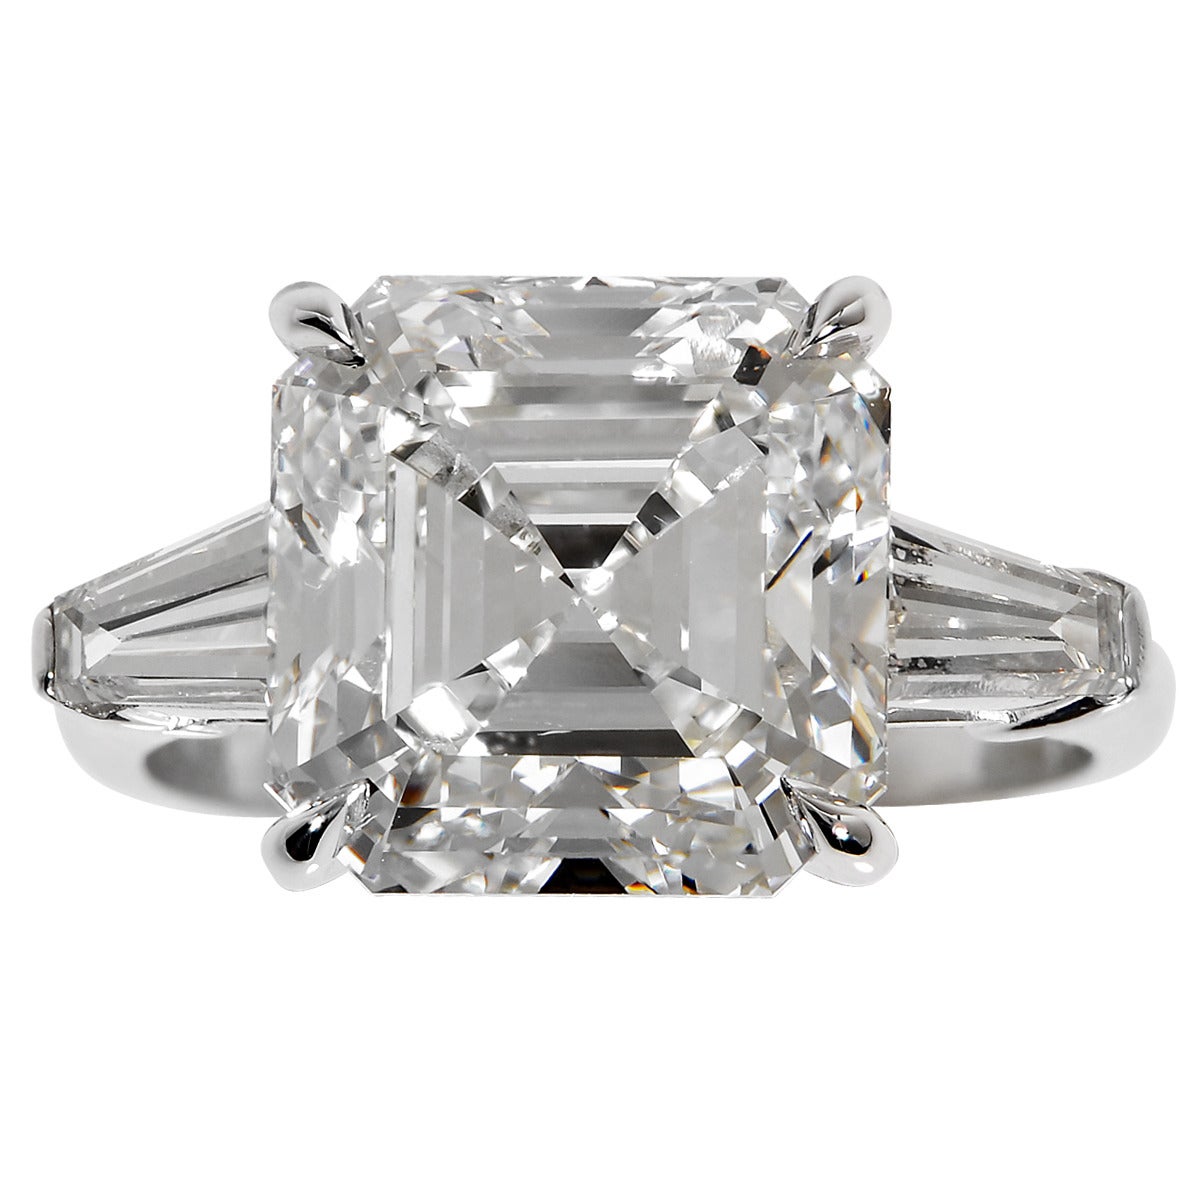 7.15 Carat GIA Cert Square Emerald Cut  Diamond Ring